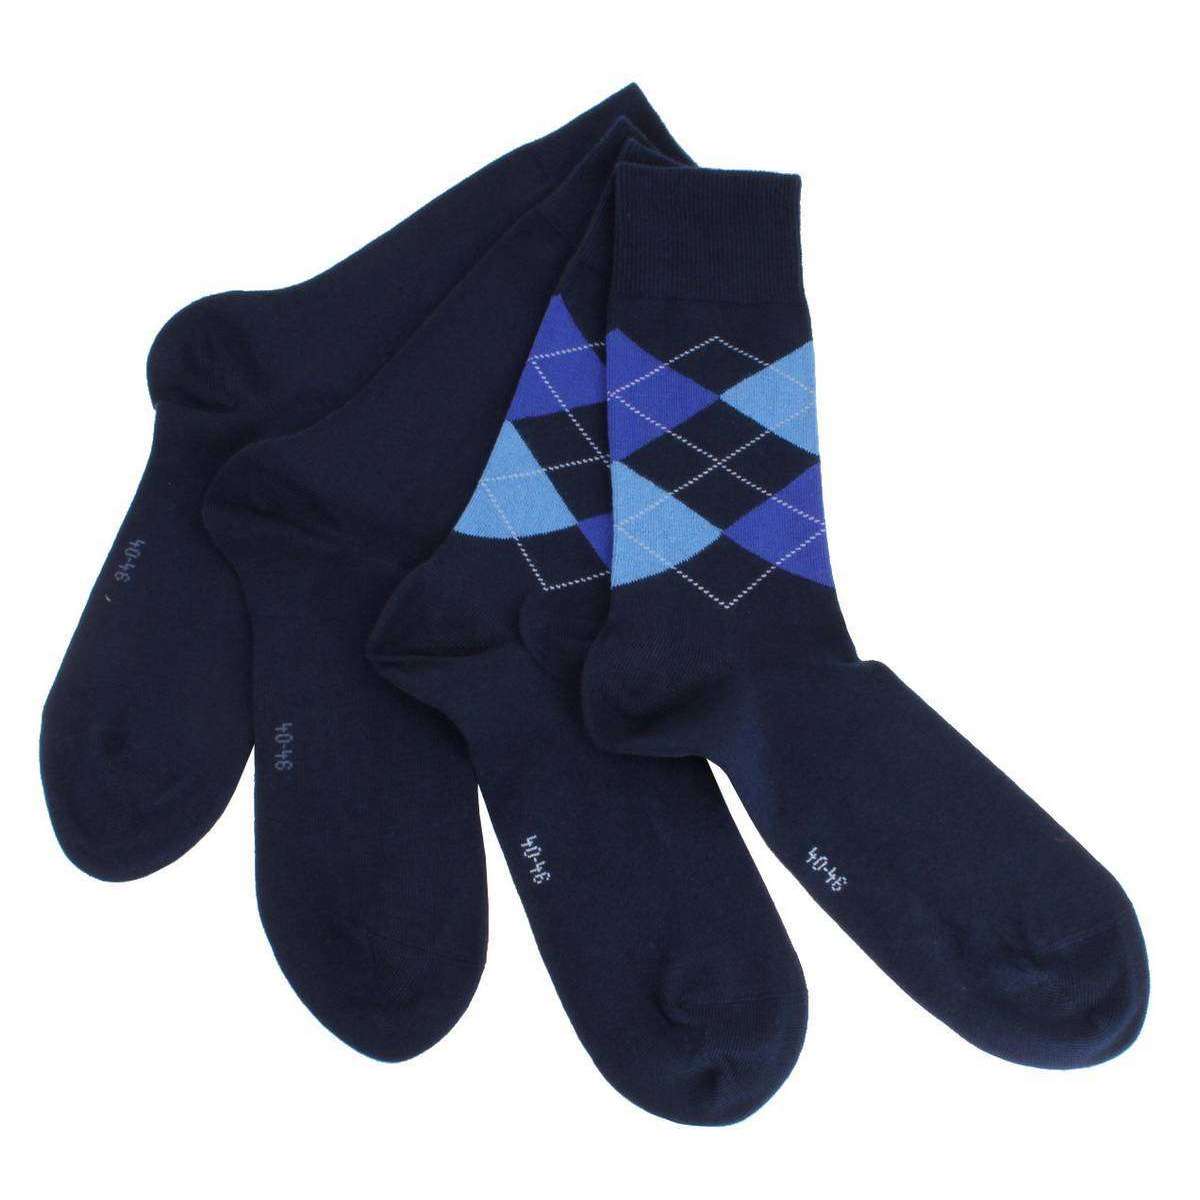 TOETOE® Socks - Ski/Snow Toe Socks Black Blue